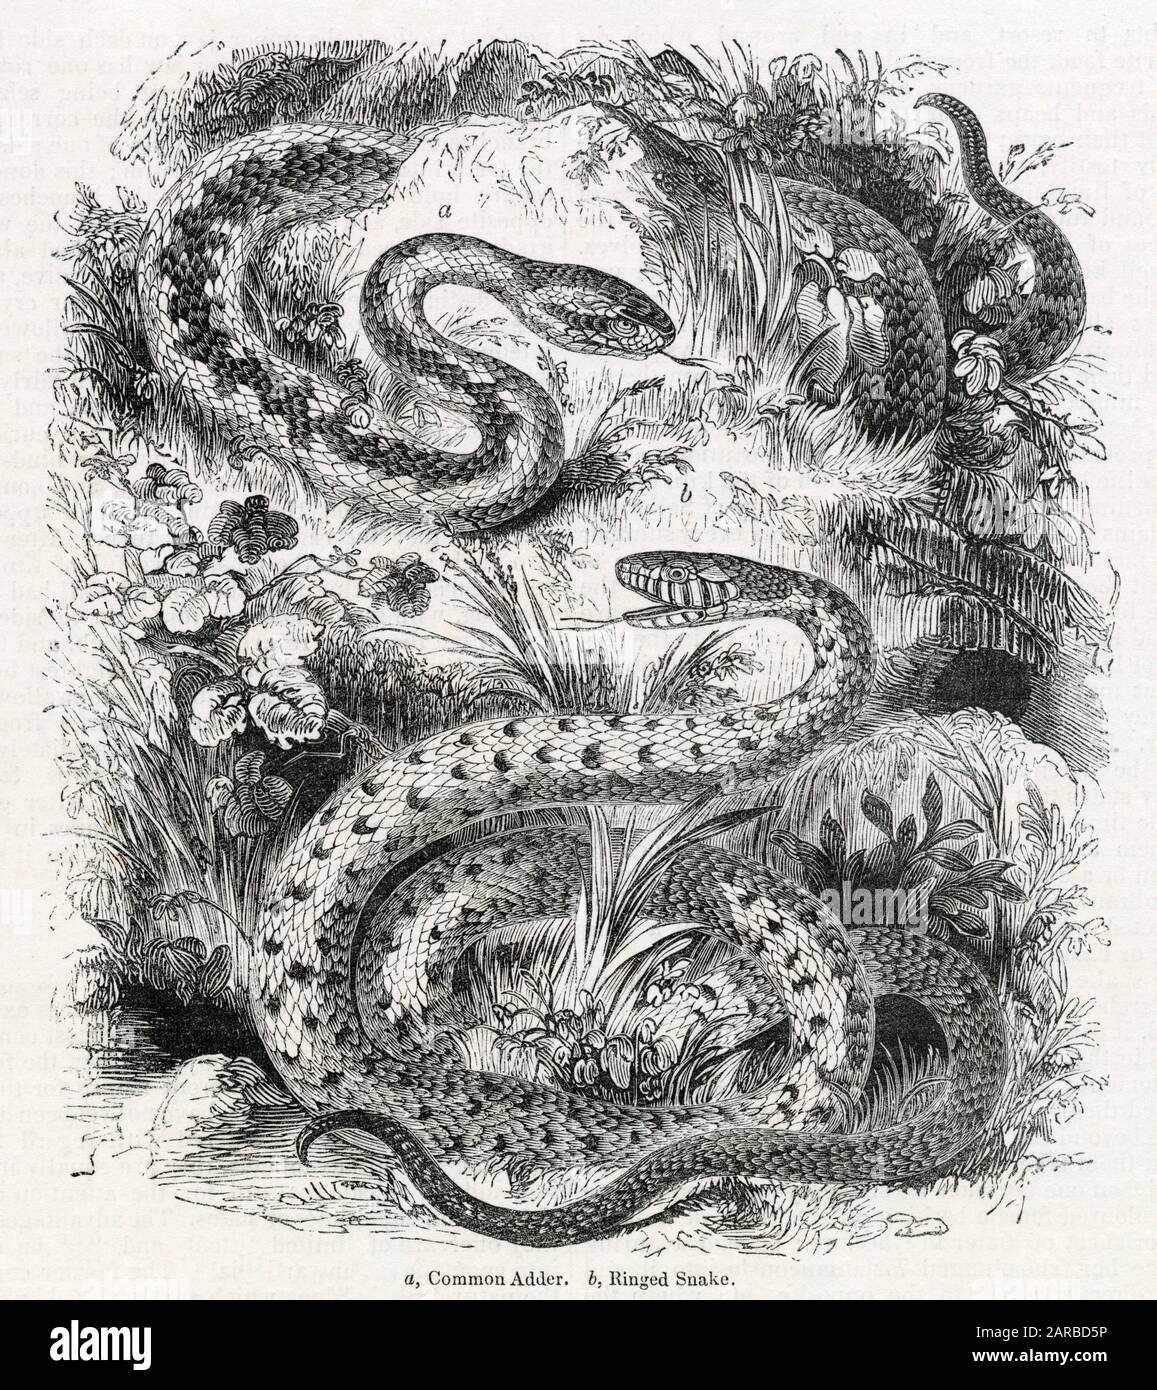 Vescica comune e serpente Ringed. Data: 1843 Foto Stock